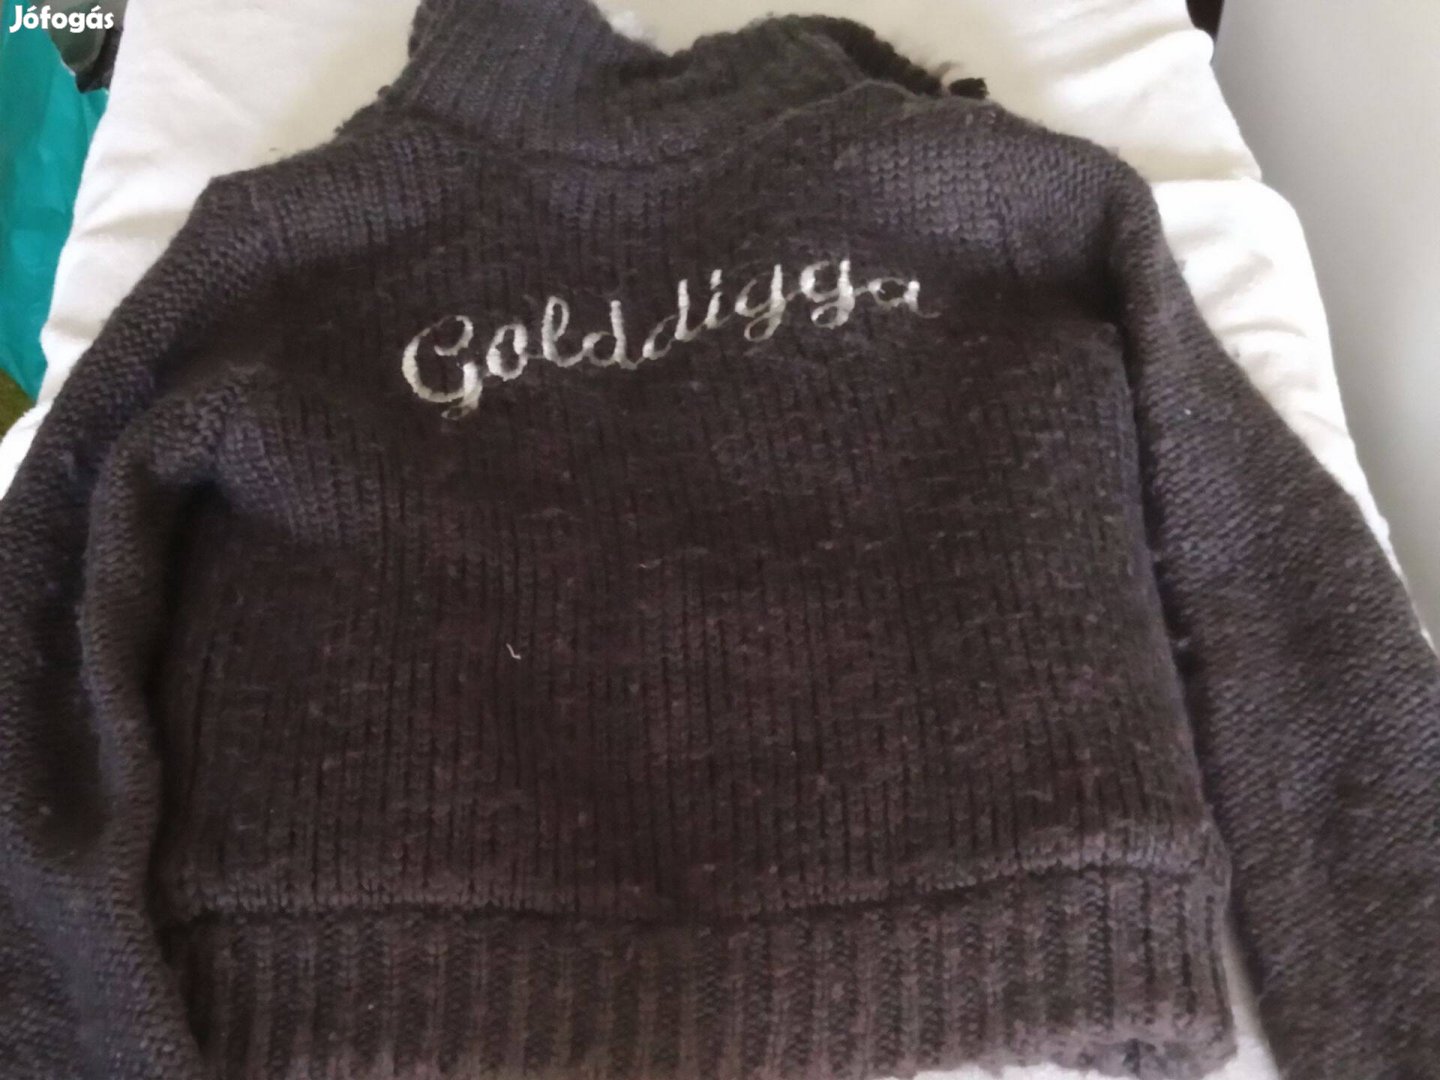 Golddigga gyerek bélelt zipzáras téli pulover 3000ft óbuda